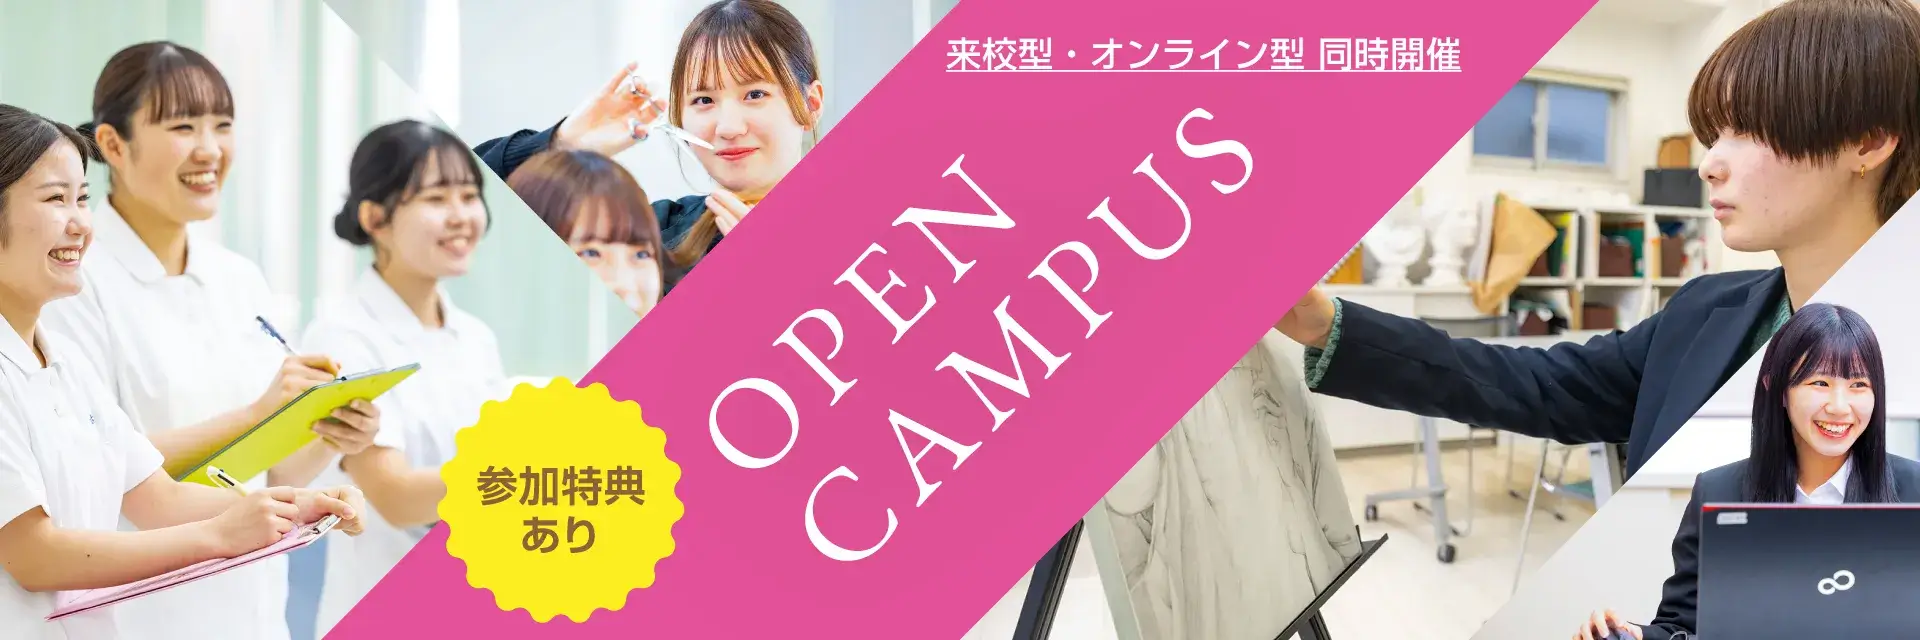 赤塚学園 オープンキャンパス